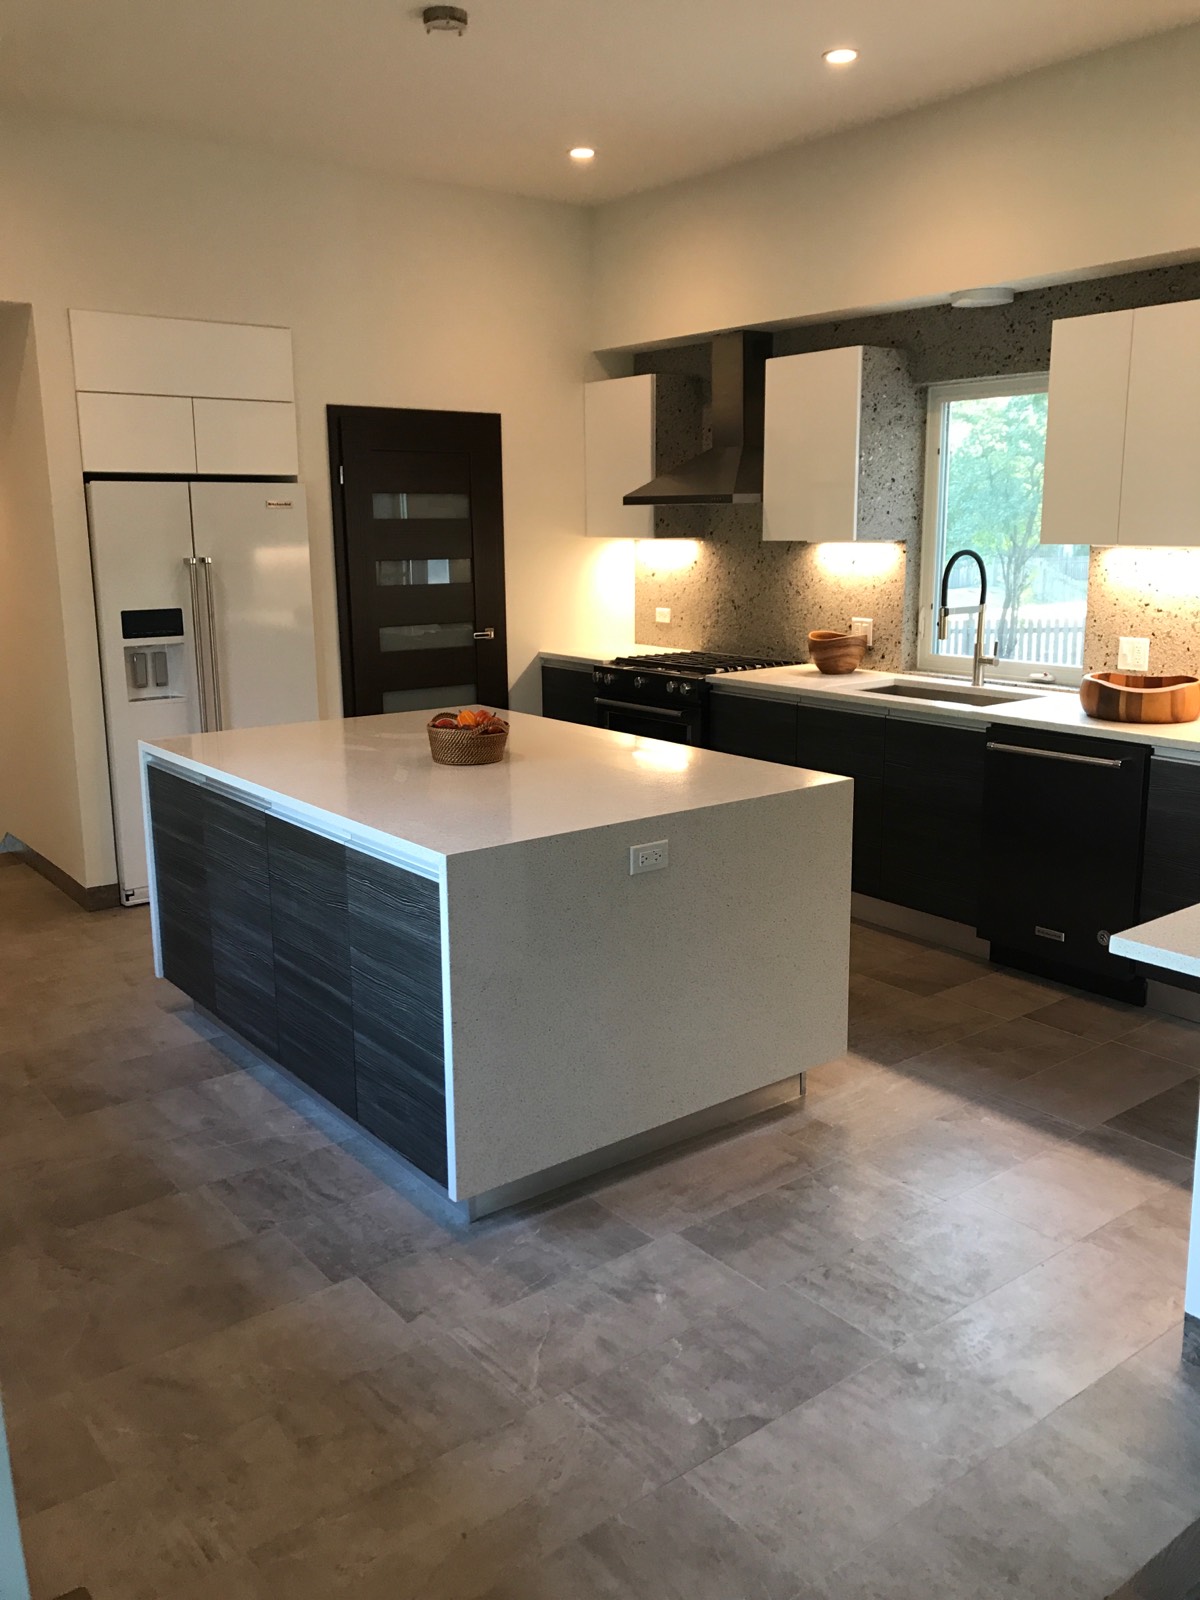 Bright kitchen with granite countertops